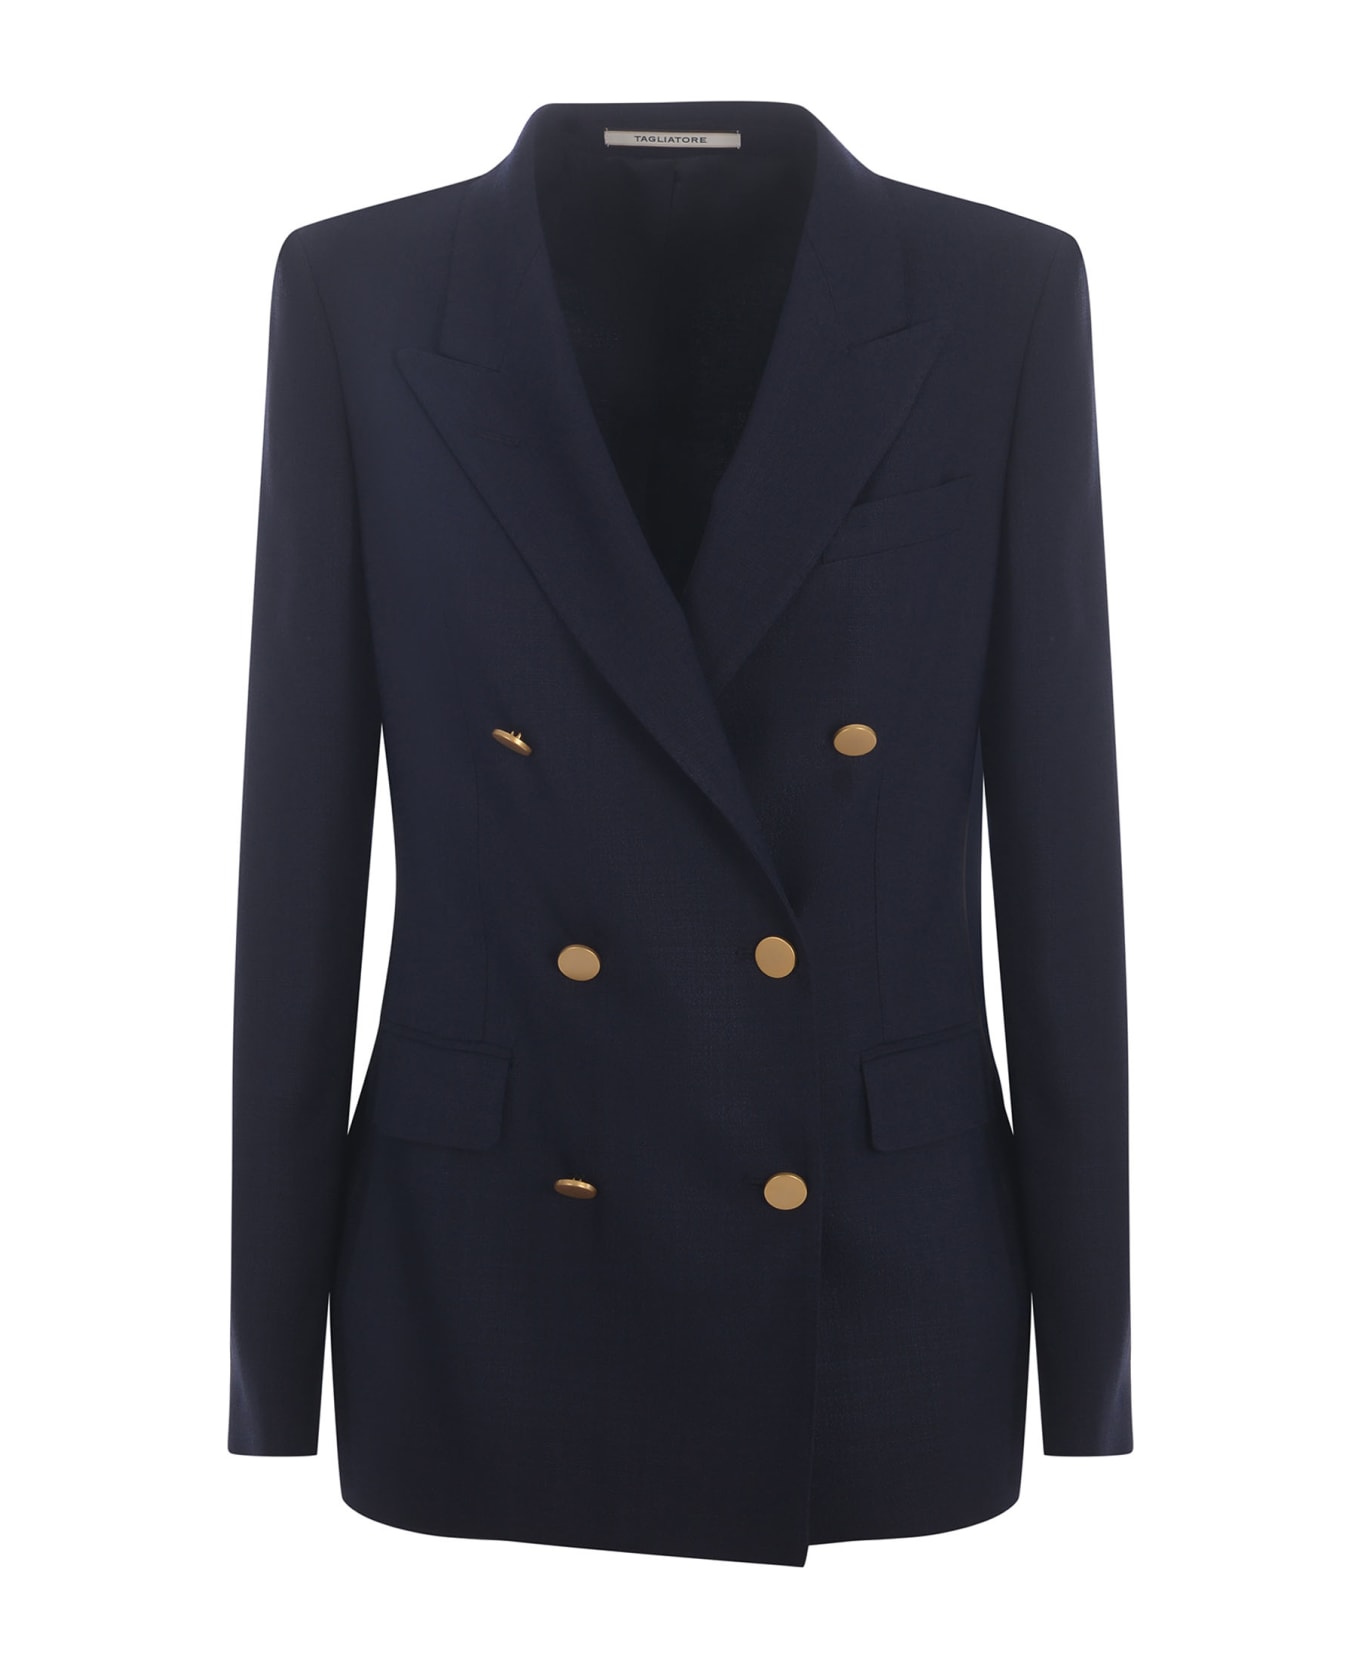 Tagliatore Double-breasted Jacket Tagliatore "j-parigi" Made Of Viscose Blend - Blu navy